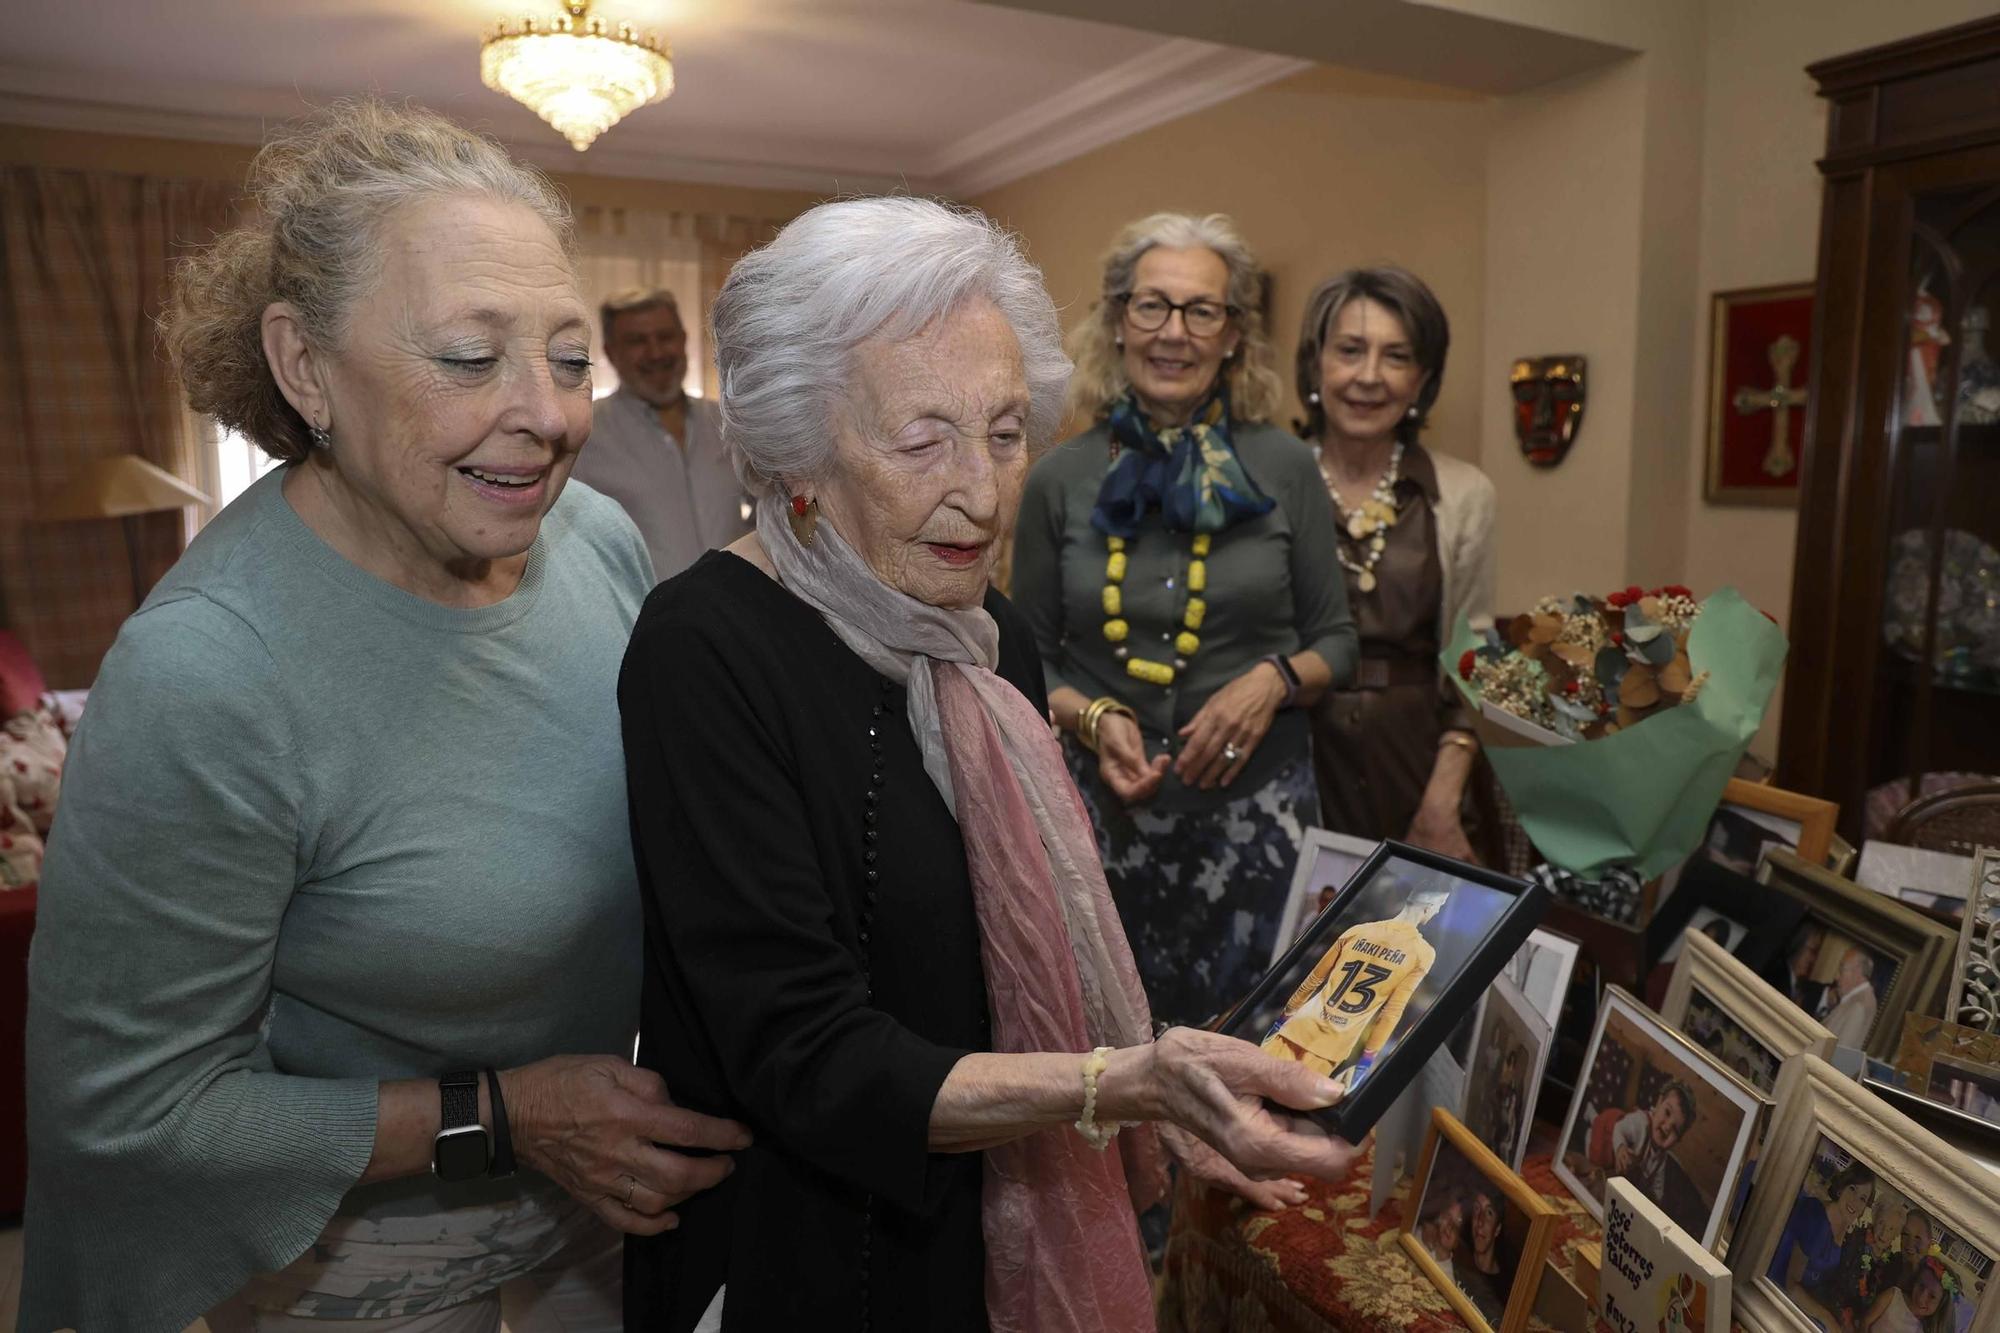 Julia, maestra de vocación, cumple 100 años en Alicante